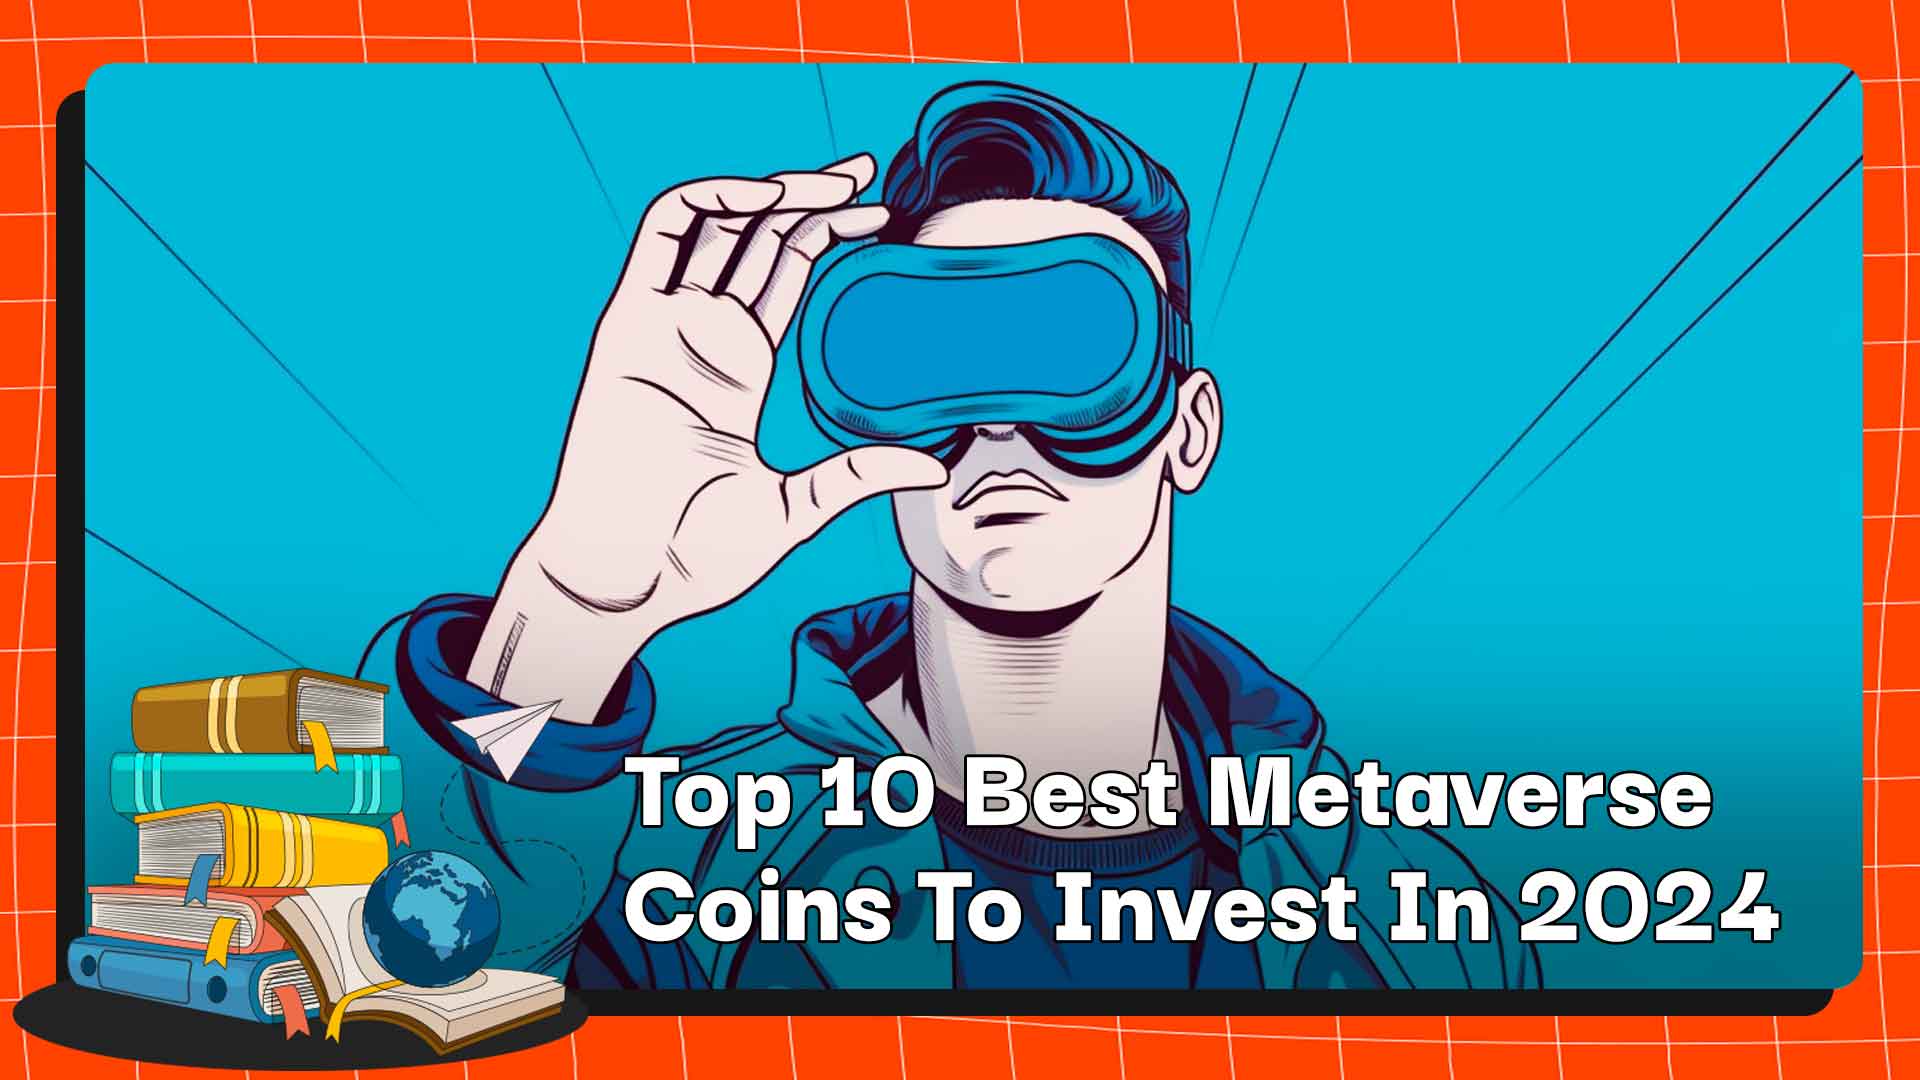 Top 10 des meilleures pièces métaverse dans lesquelles investir en 2024